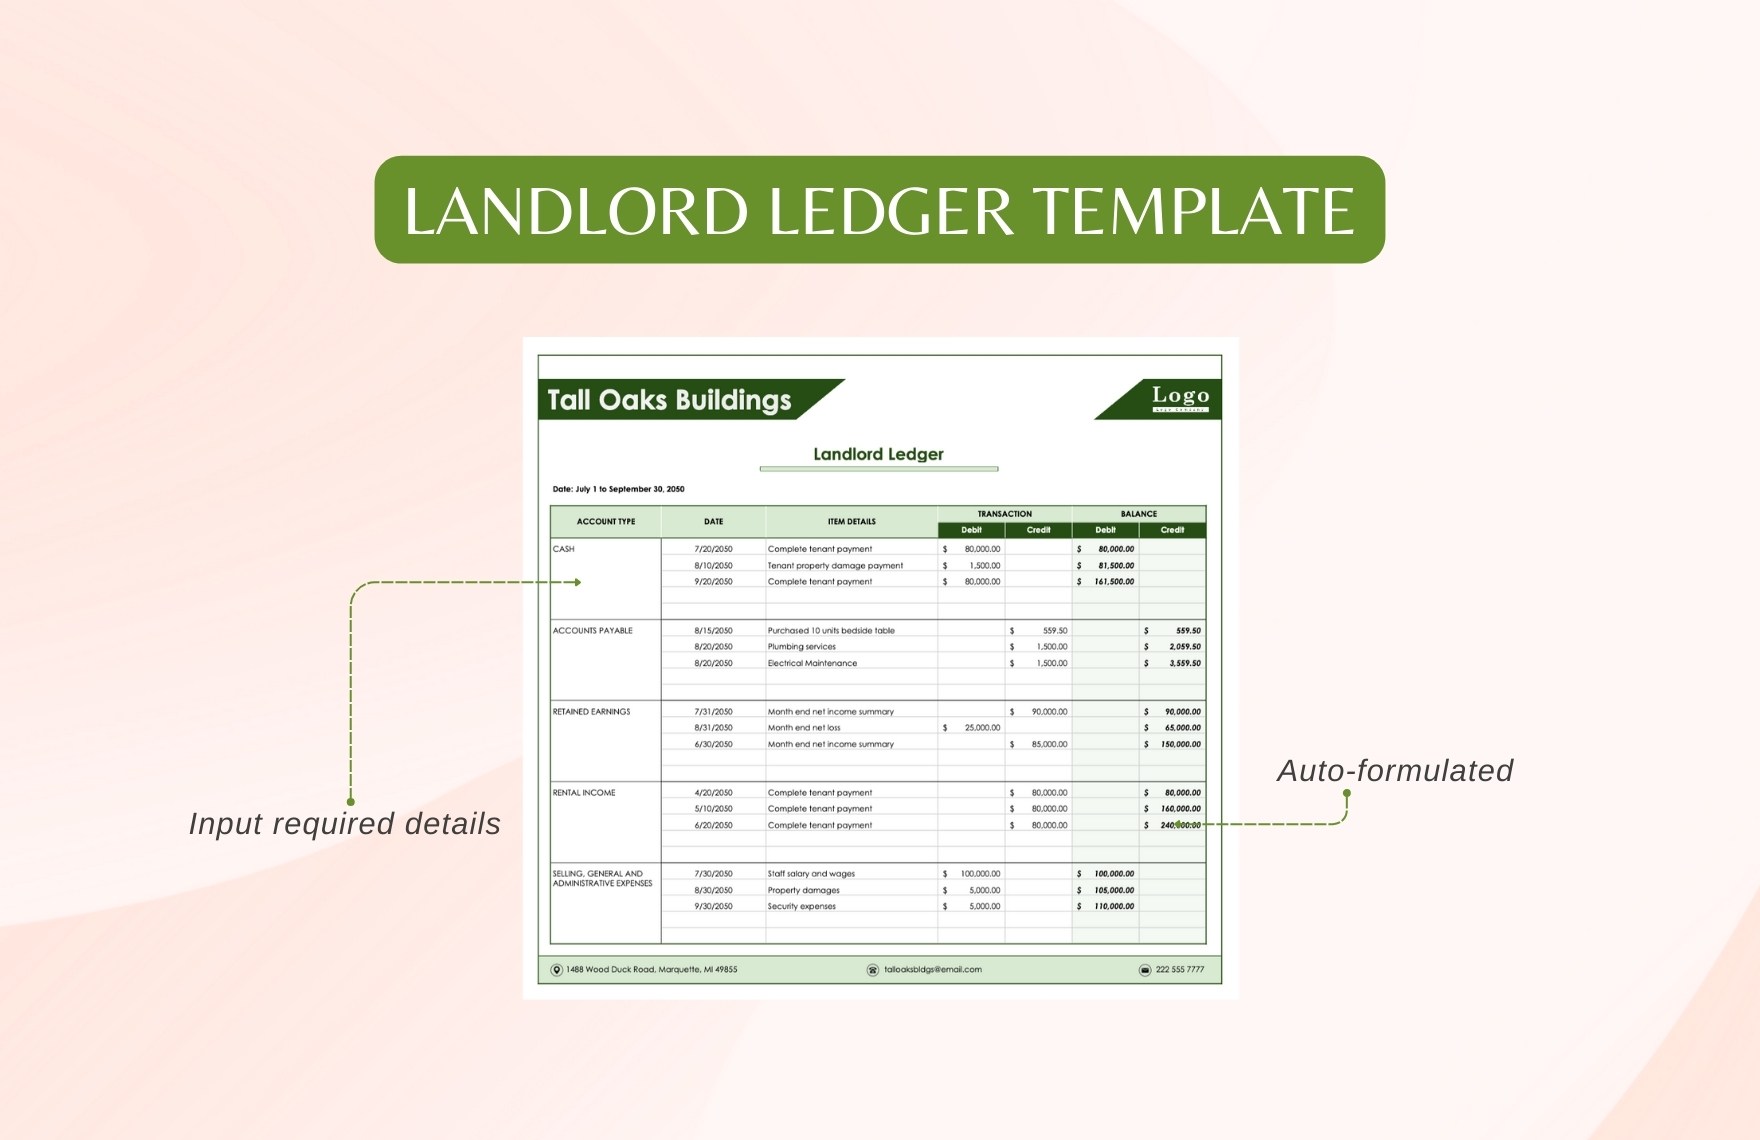 Landlord Ledger Template